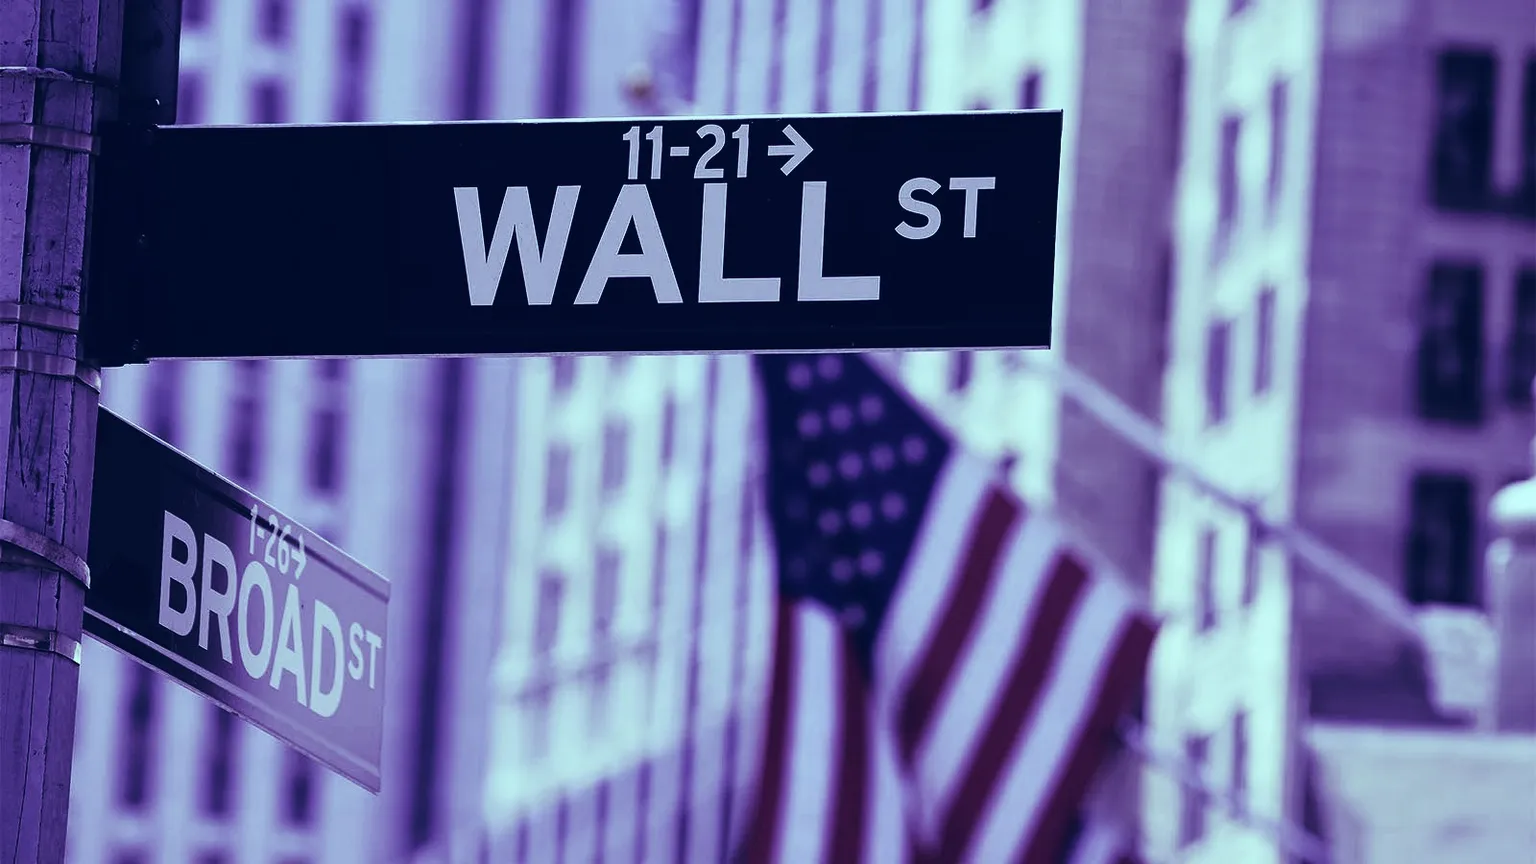 Wall Street. IMAGE: Shutterstock